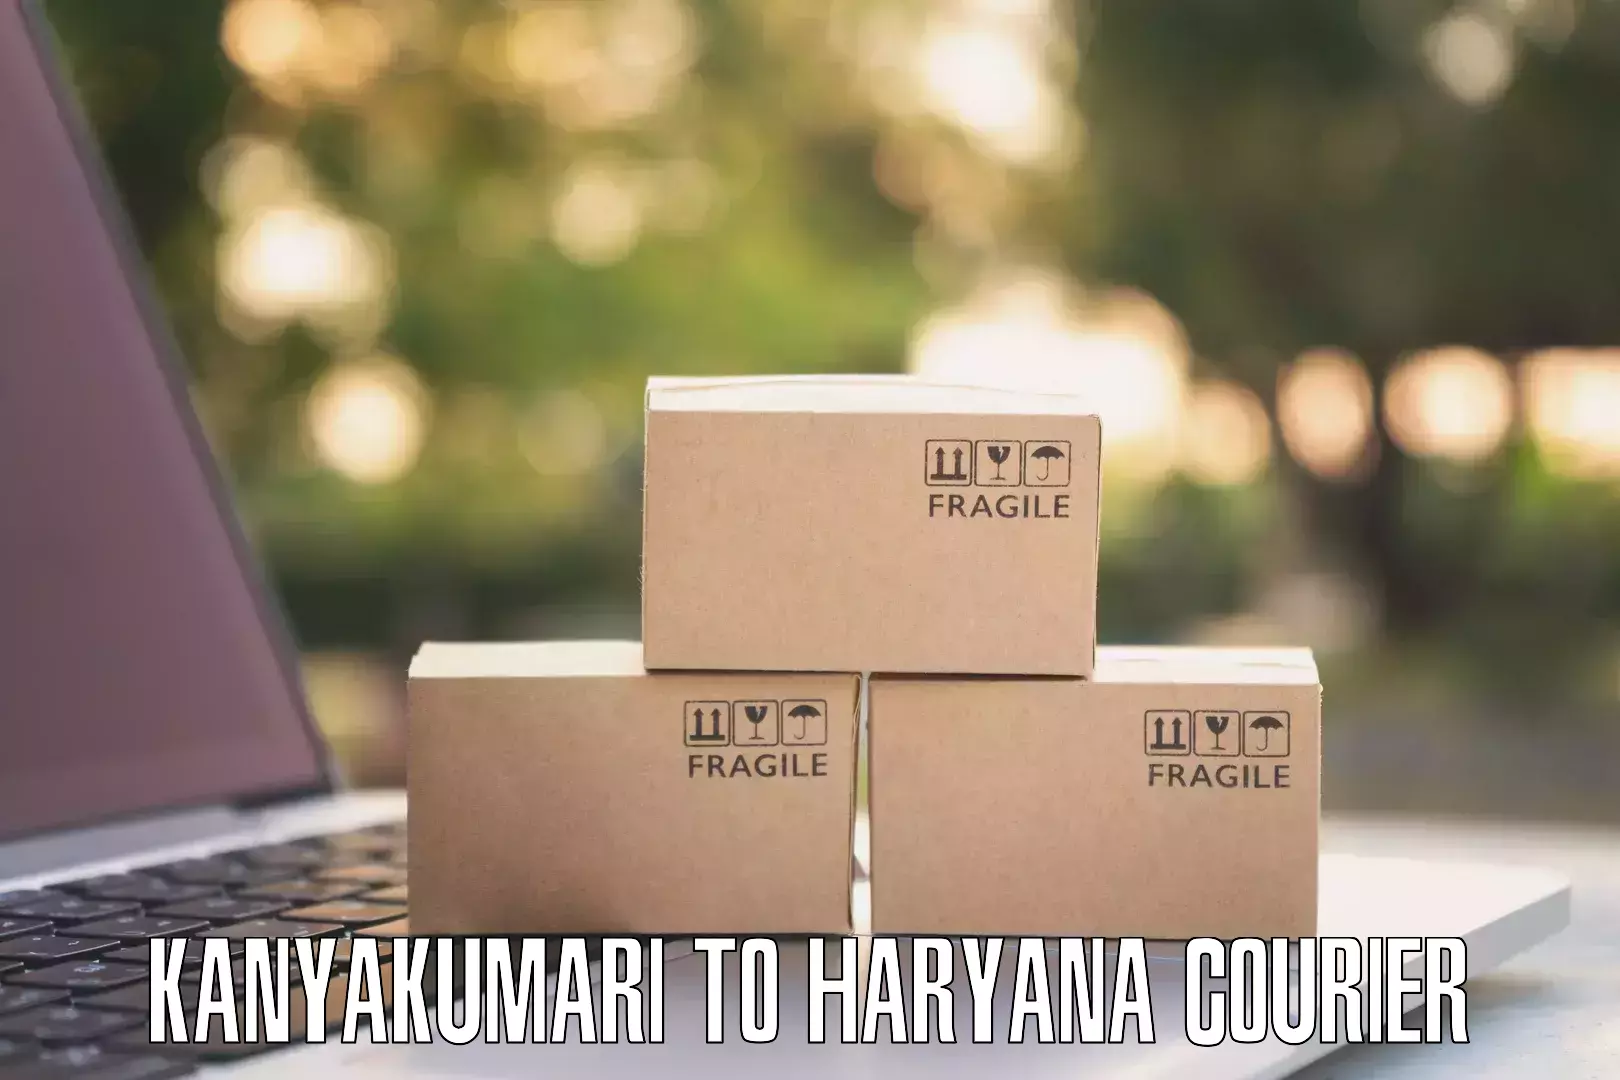 Professional courier handling Kanyakumari to Charkhi Dadri